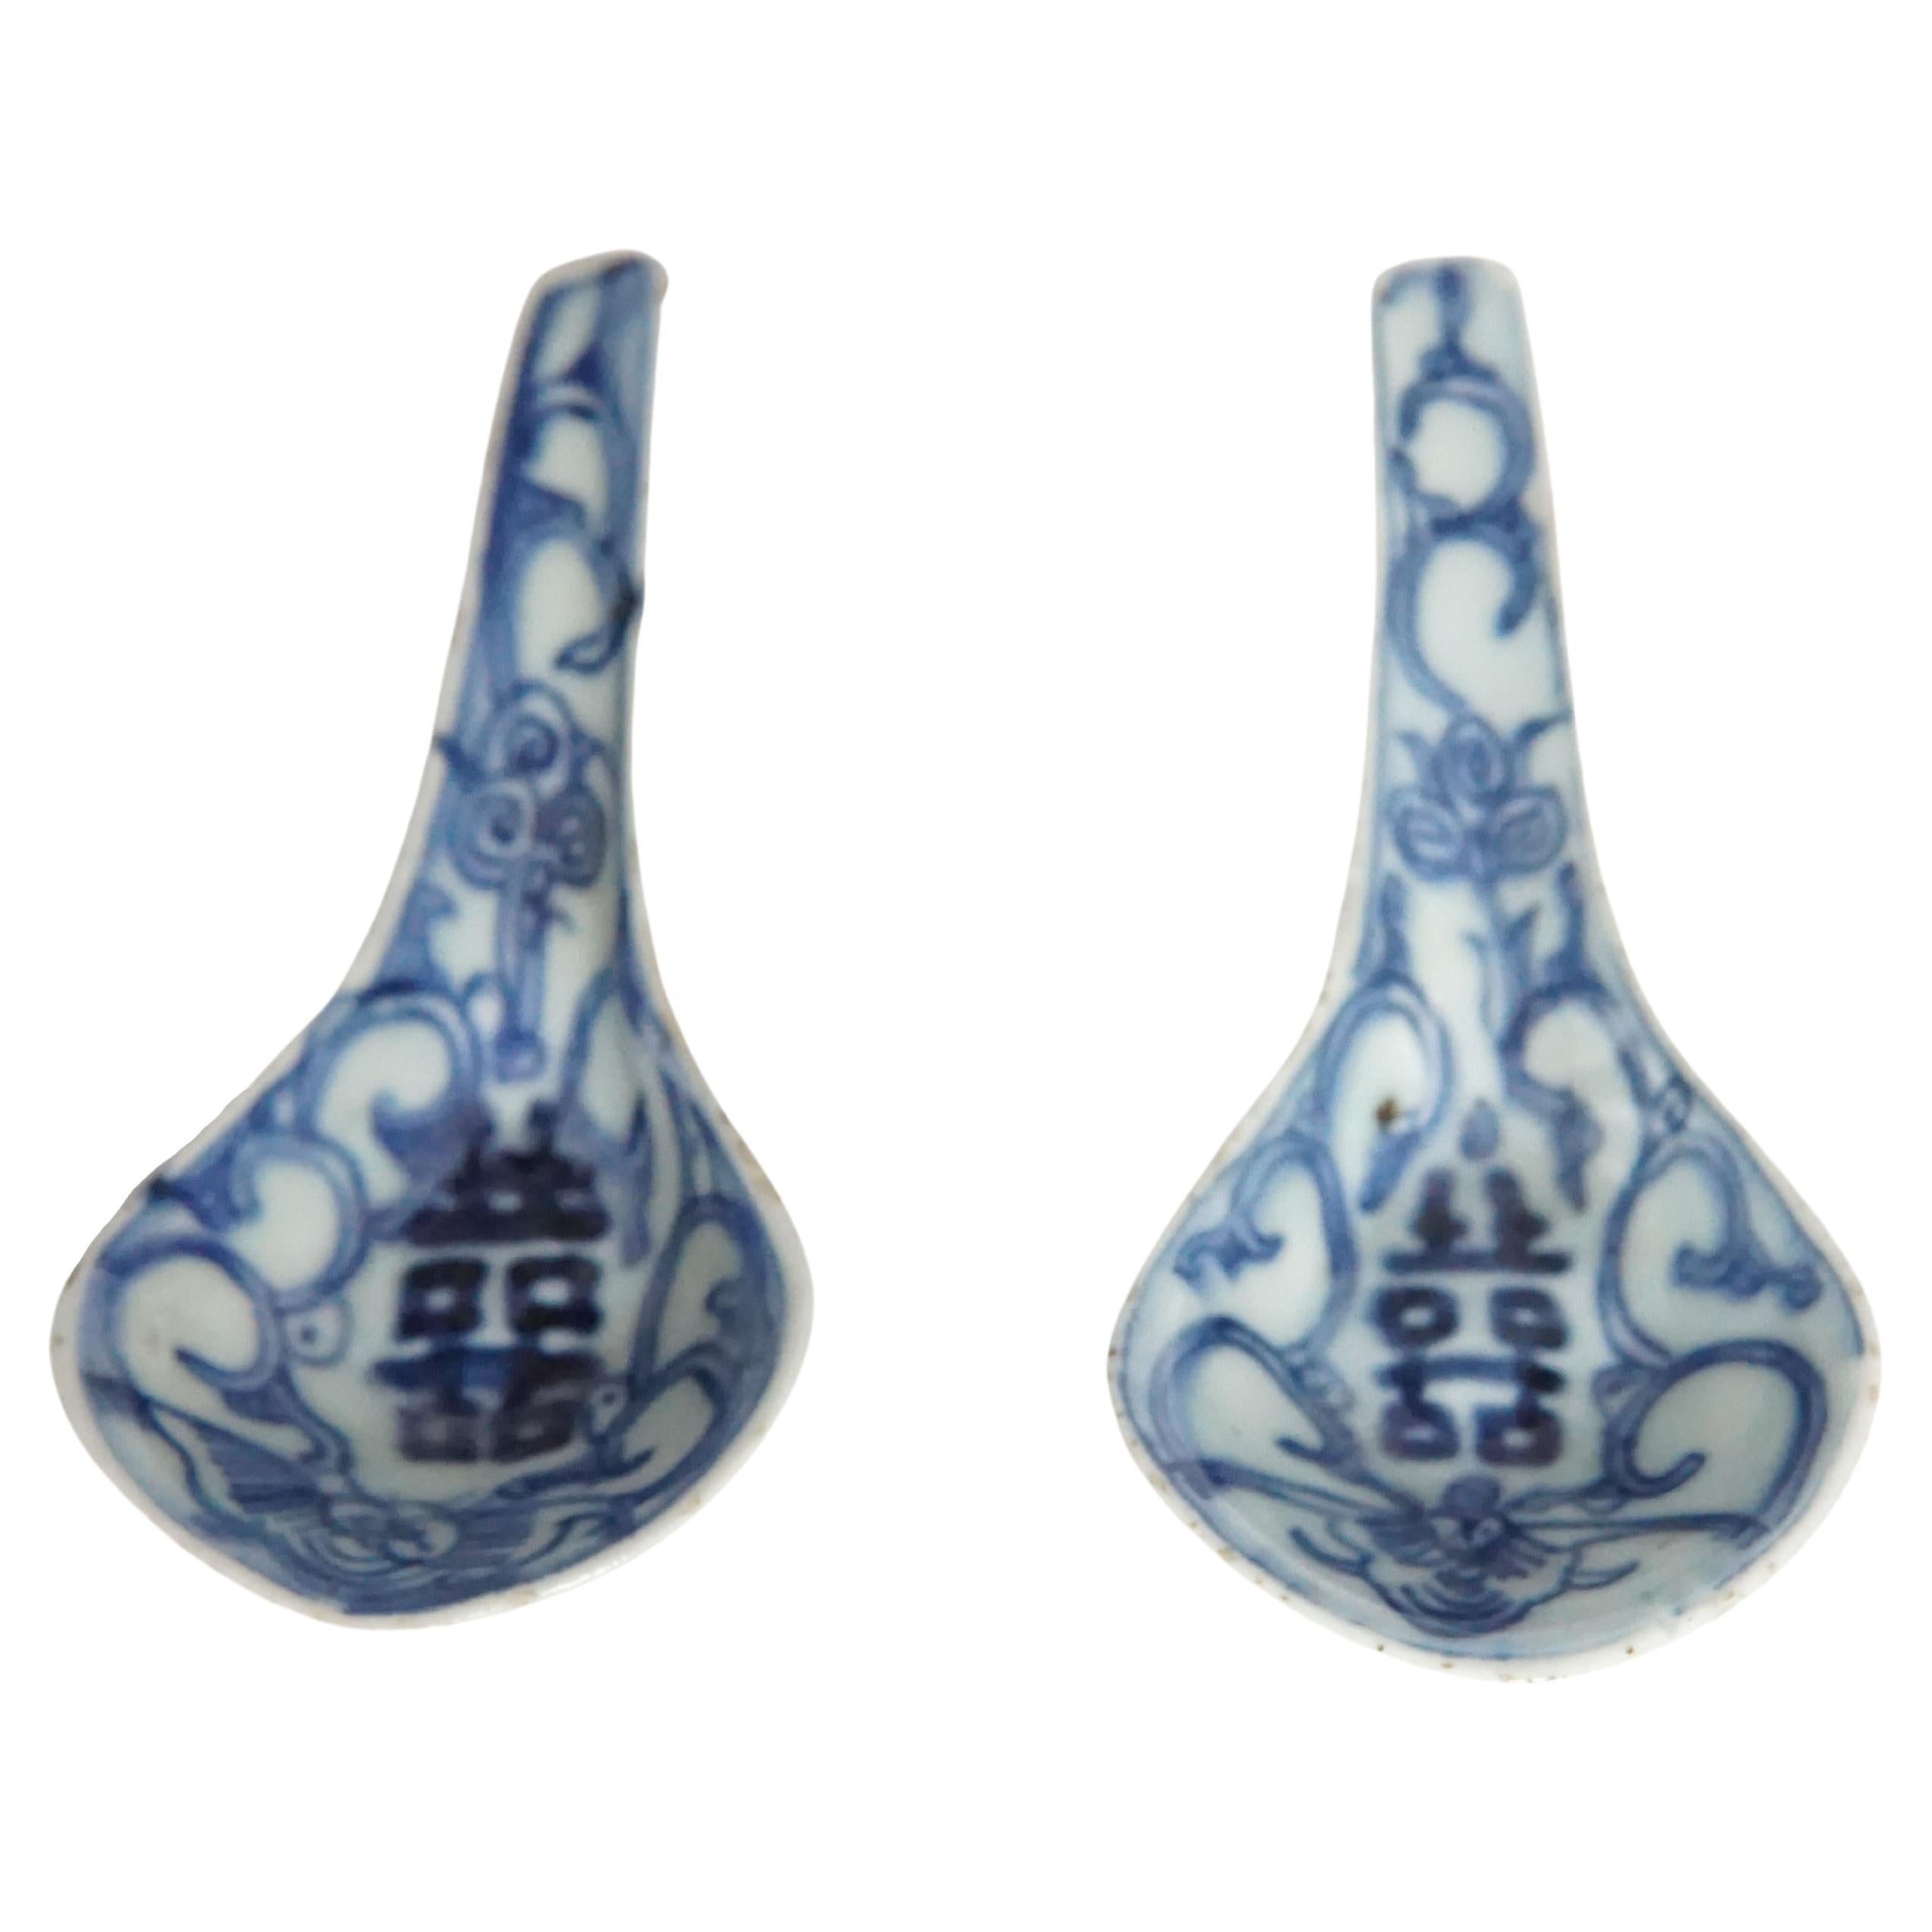 Une paire de cuillères en céramique bleue et blanche merveilleusement peintes à la main, datant d'environ 1850. Ils portent des signes de double bonheur et une forme merveilleuse et sculpturale. Un grand morceau d'histoire chinoise. 
 